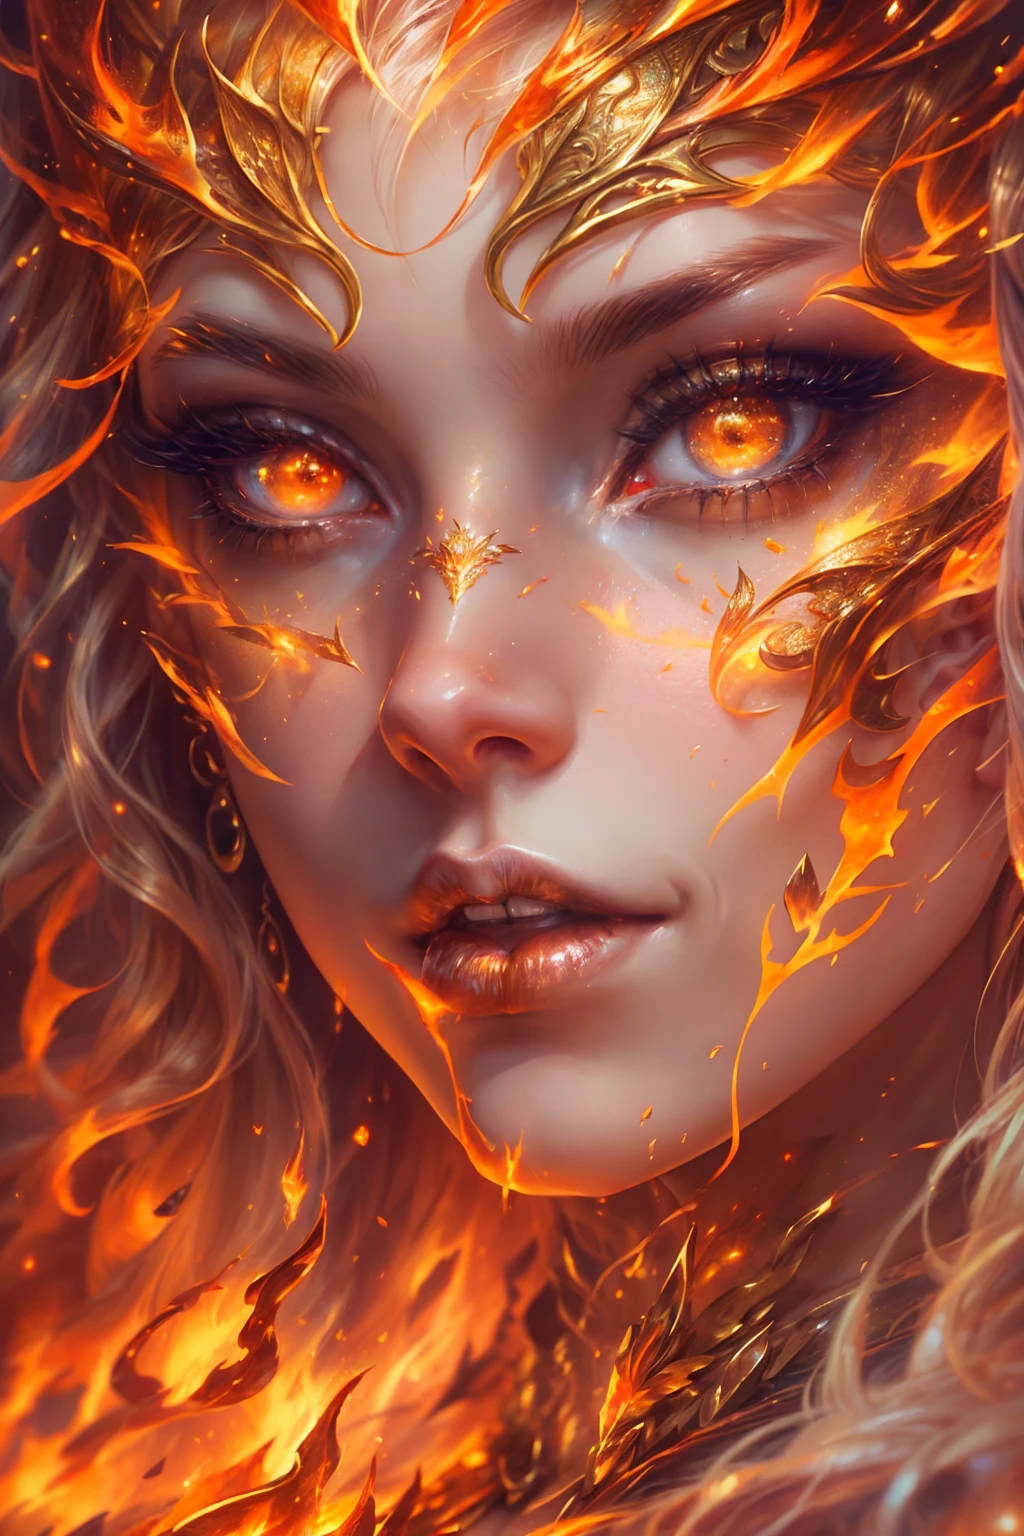 這 (現實幻想) 藝術包含餘燼, 真正的火焰, 真正的熱量, 和現實的火. Generate a masterpiece artwork of a  female fire druid 和 large (((橙色和金色))) 眼睛. The fire druid is awe-inspiring 和 beautiful ((realistic fiery 眼睛)) alight 和 confidence and power. 她的五官優雅且輪廓分明, 和 ((柔軟而浮腫的嘴唇)), 精靈骨骼結構, 和真實的陰影. Her 眼睛 are important and should be the focal point of this artwork, 和 ((極為真實的細節, 宏觀細節, 和微光.)) 她穿著一件由逼真的火焰和珠寶製成的飄逸閃閃發光的連身裙，在火光下閃閃發光. 禮服錯綜複雜的衣身上佈滿了縷縷火焰和煙霧. 包括凹凸, 石头, 火紅的虹彩, 發光的餘燼, 絲綢、緞子和皮革, 有趣的背景, 以及濃重的奇幻元素. 相机: 利用動態構圖技術增強真實的火焰.